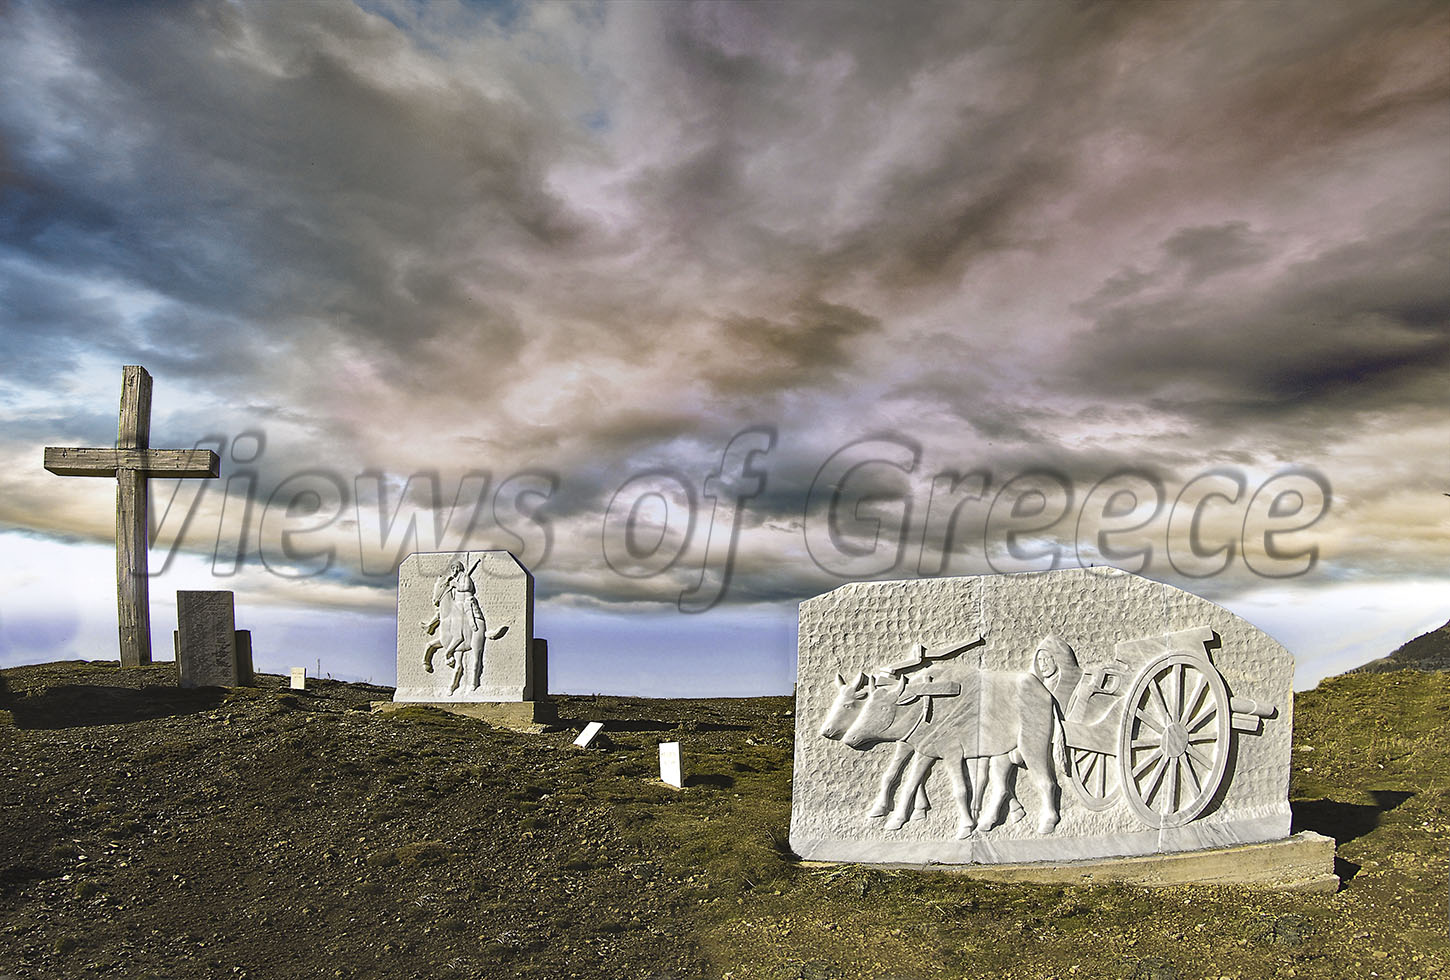 Νομός ΓΡΕΒΕΝΩΝ, Αλατόπετρα, Μεσολούρι, Δοτσικό. Το μνημείο στη θέση Αννίτσα είναι αφιερωμένο στους μαχητές του 40